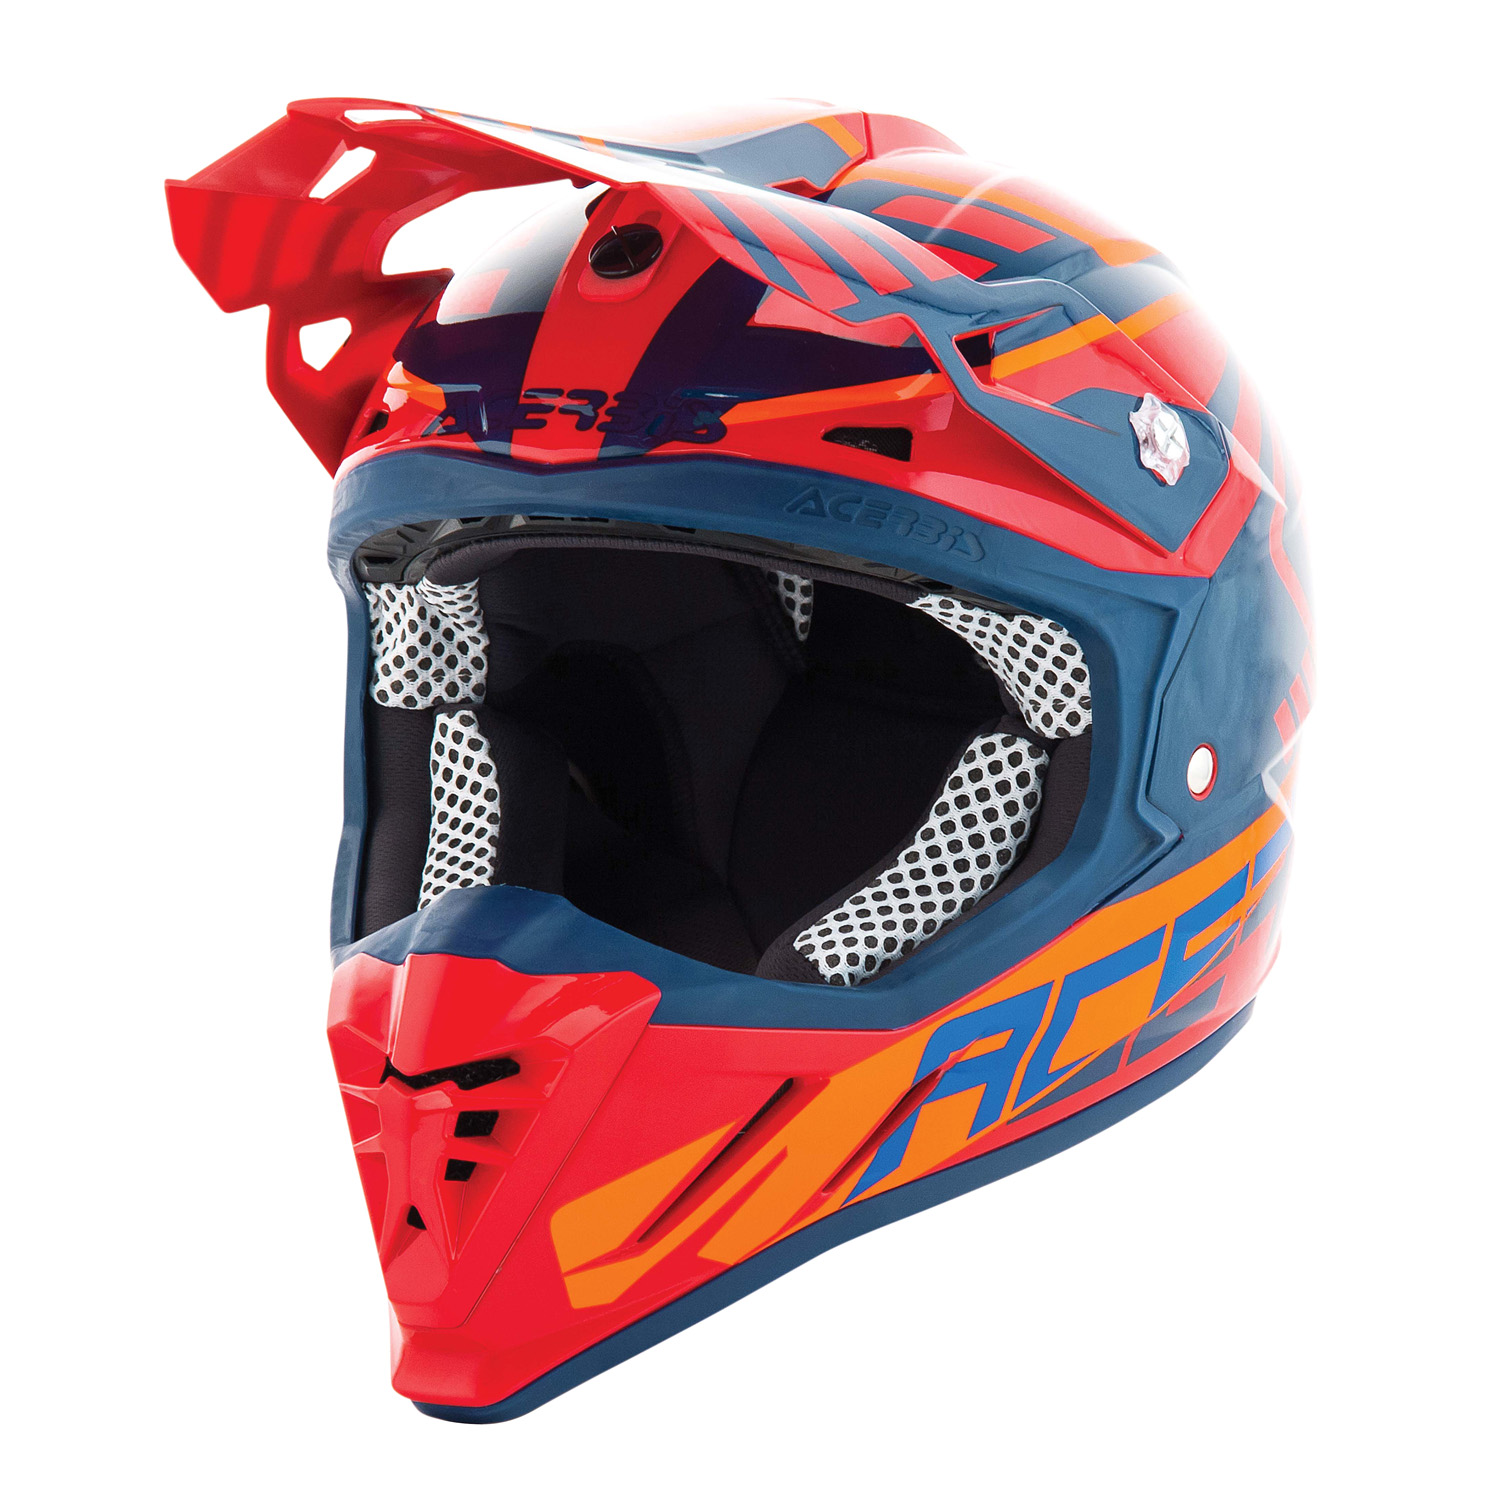 Acerbis Helmet Profile 3.0 Skinviper - Red/Blue